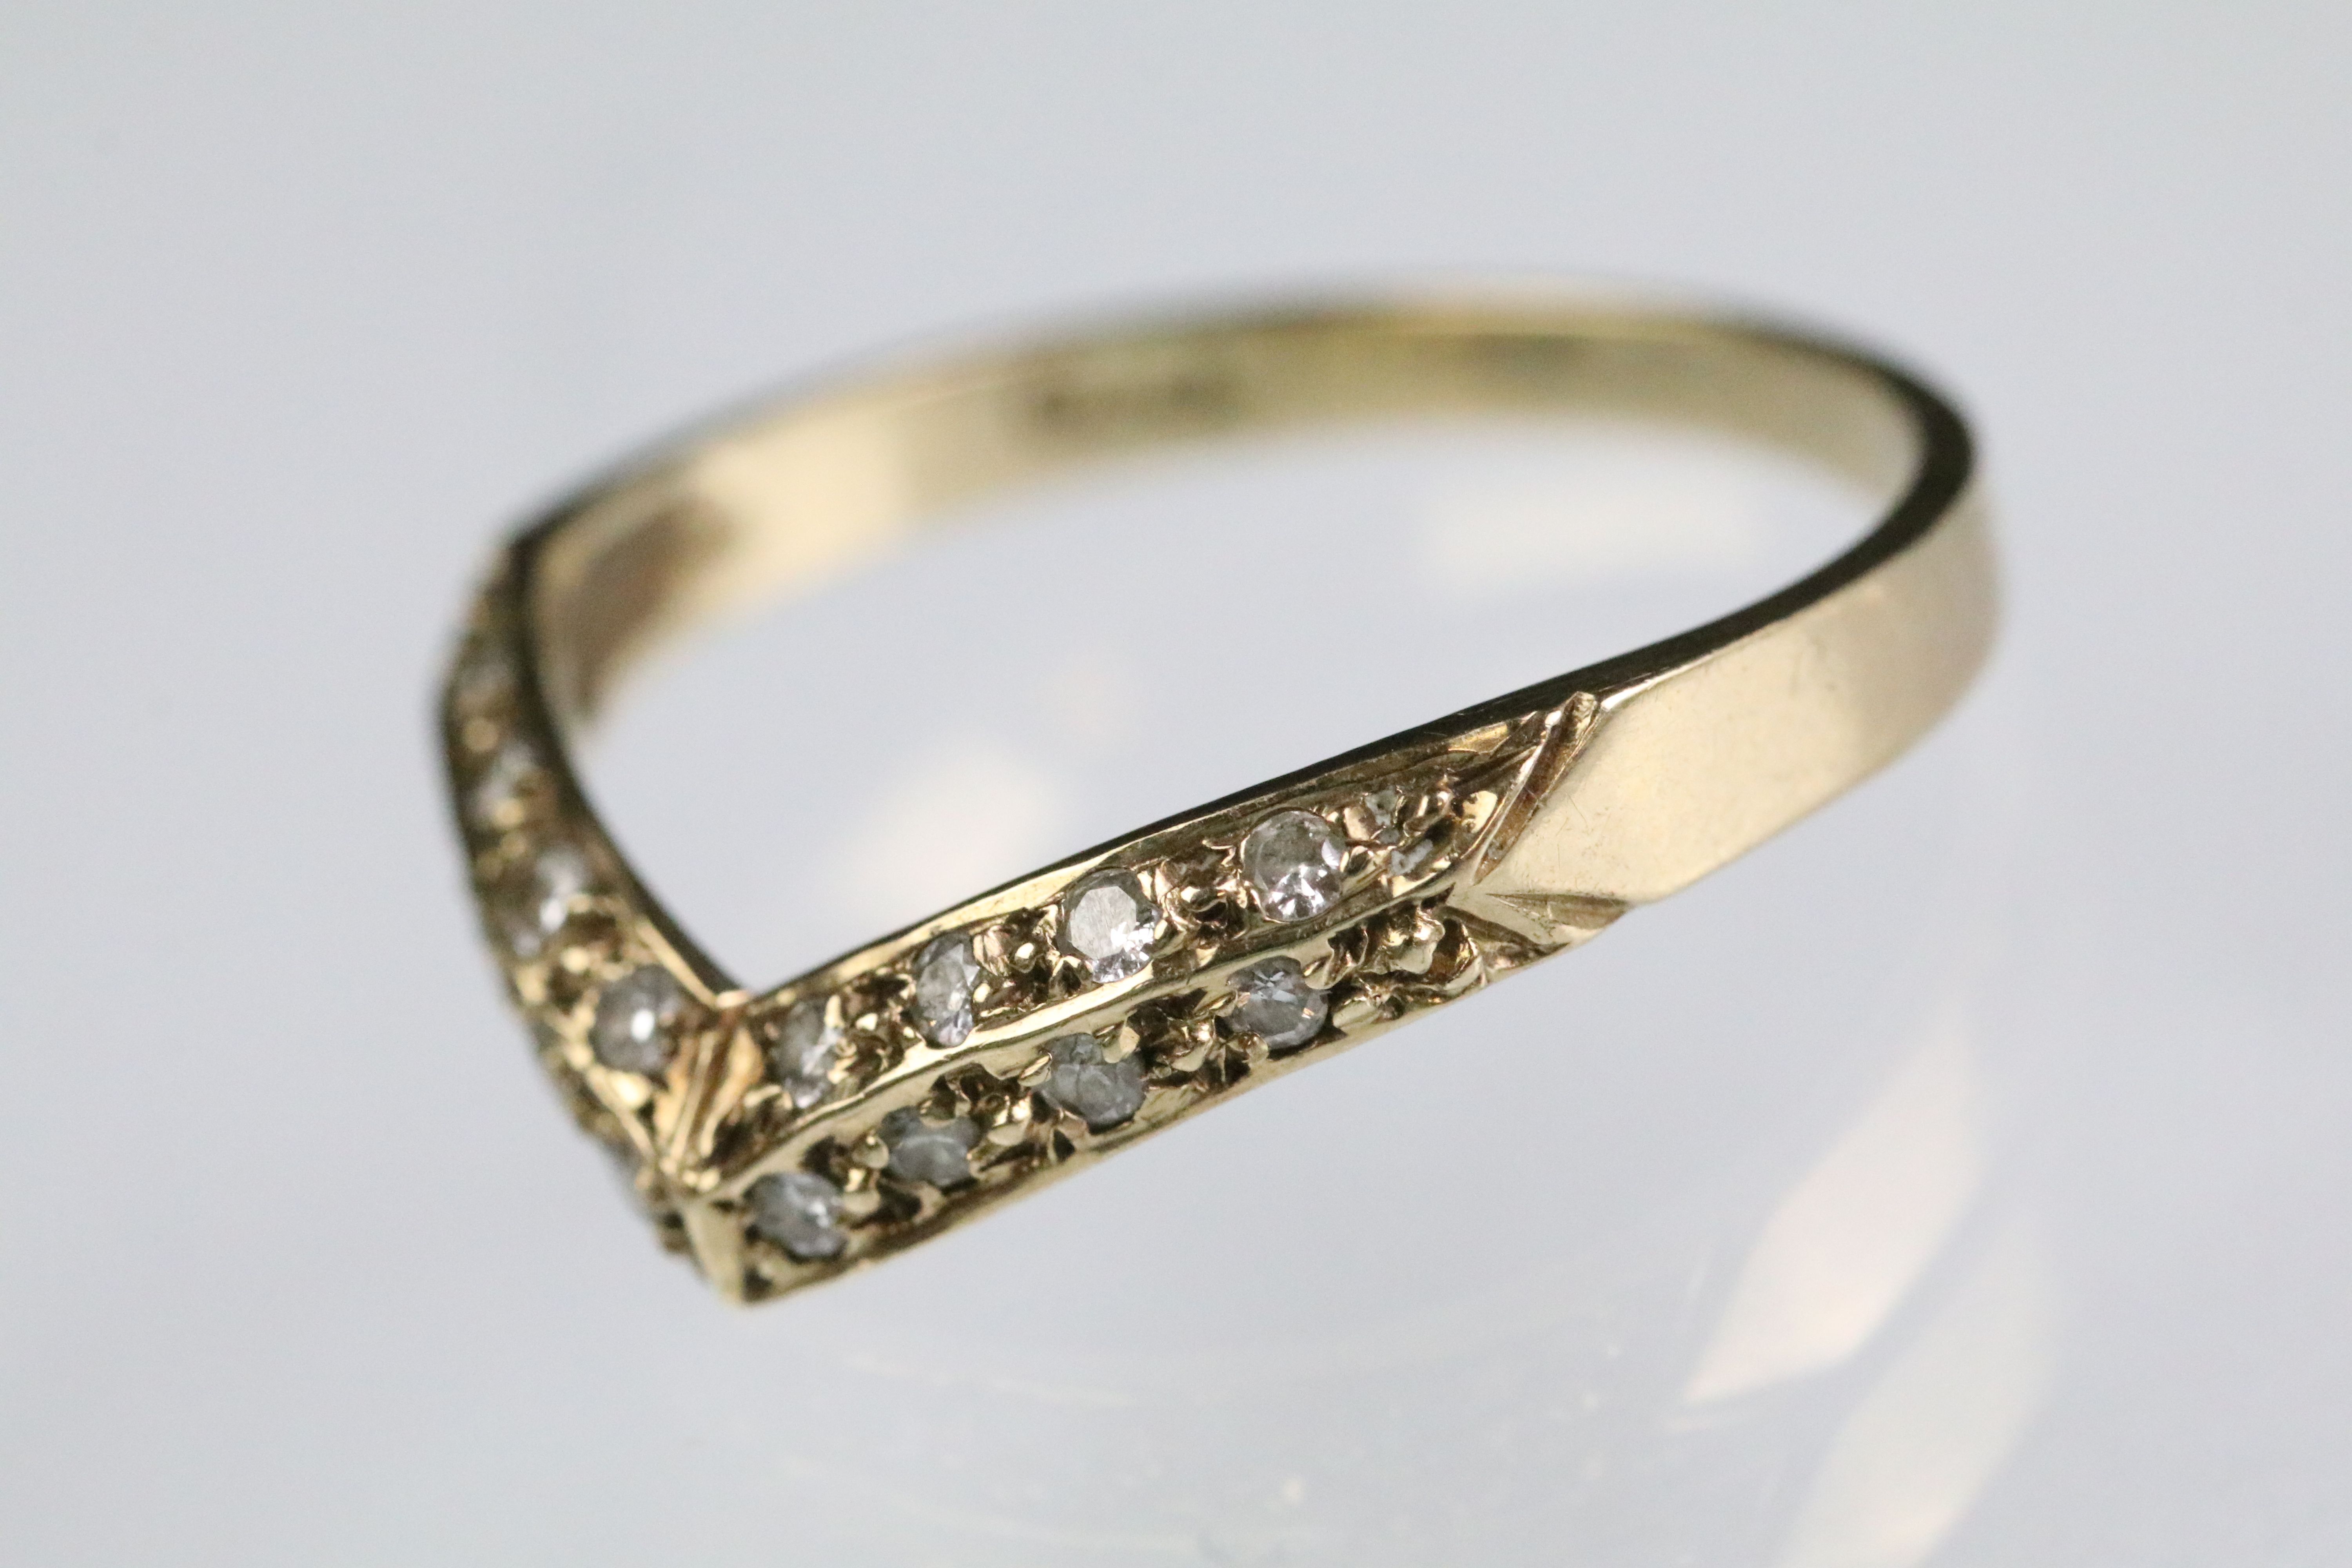 9ct gold hallmarked wishbone ring set with round cut diamonds throughout. Hallmarked London 1988.